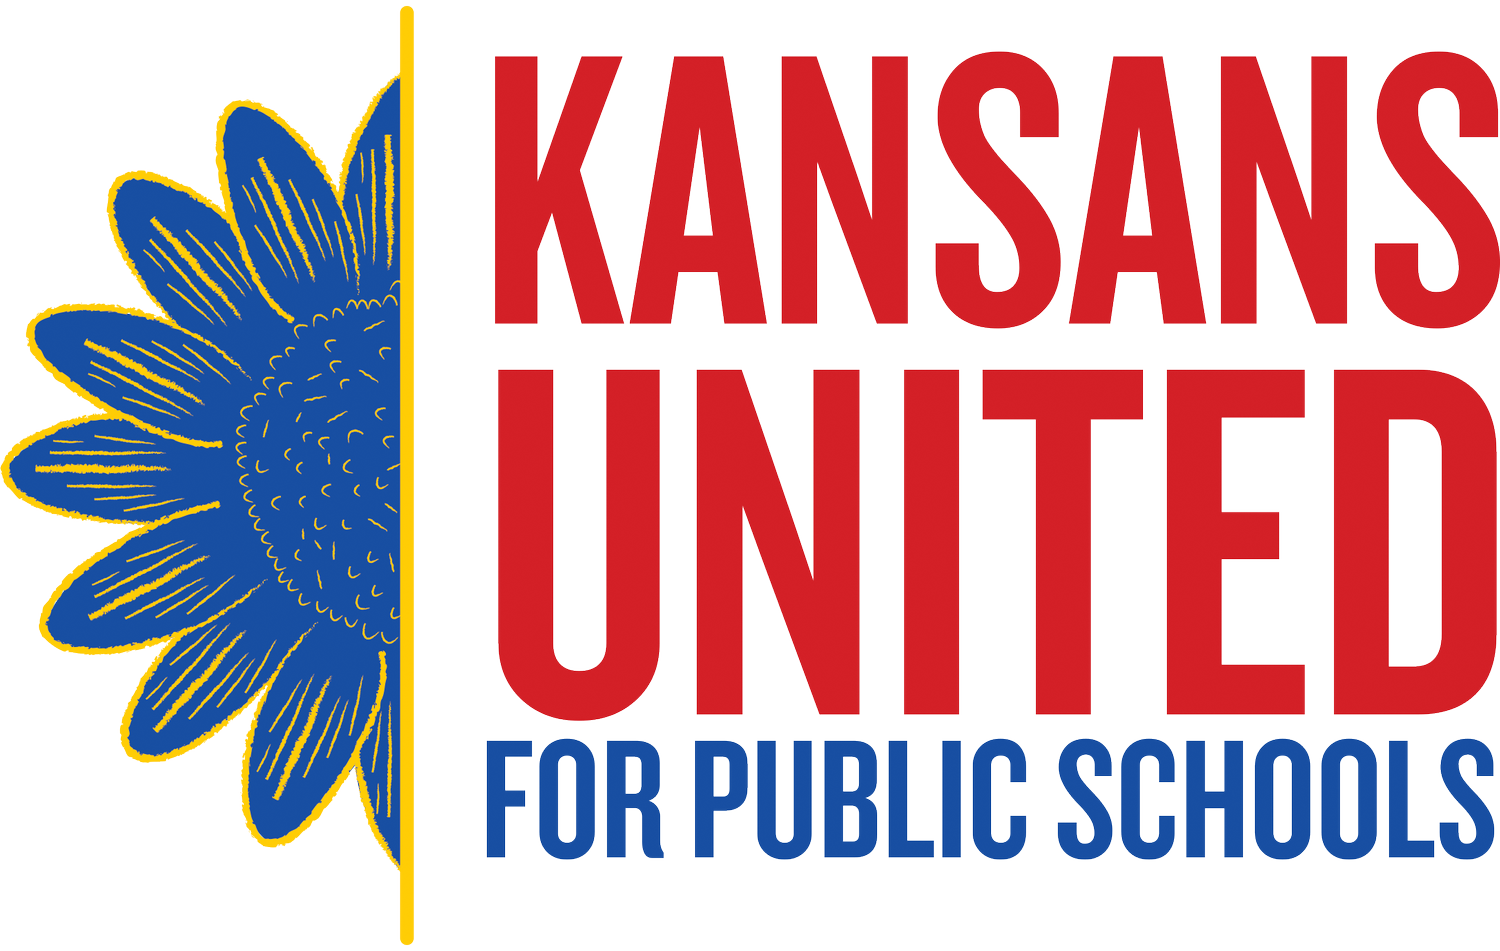 Kansans United for Public Schools